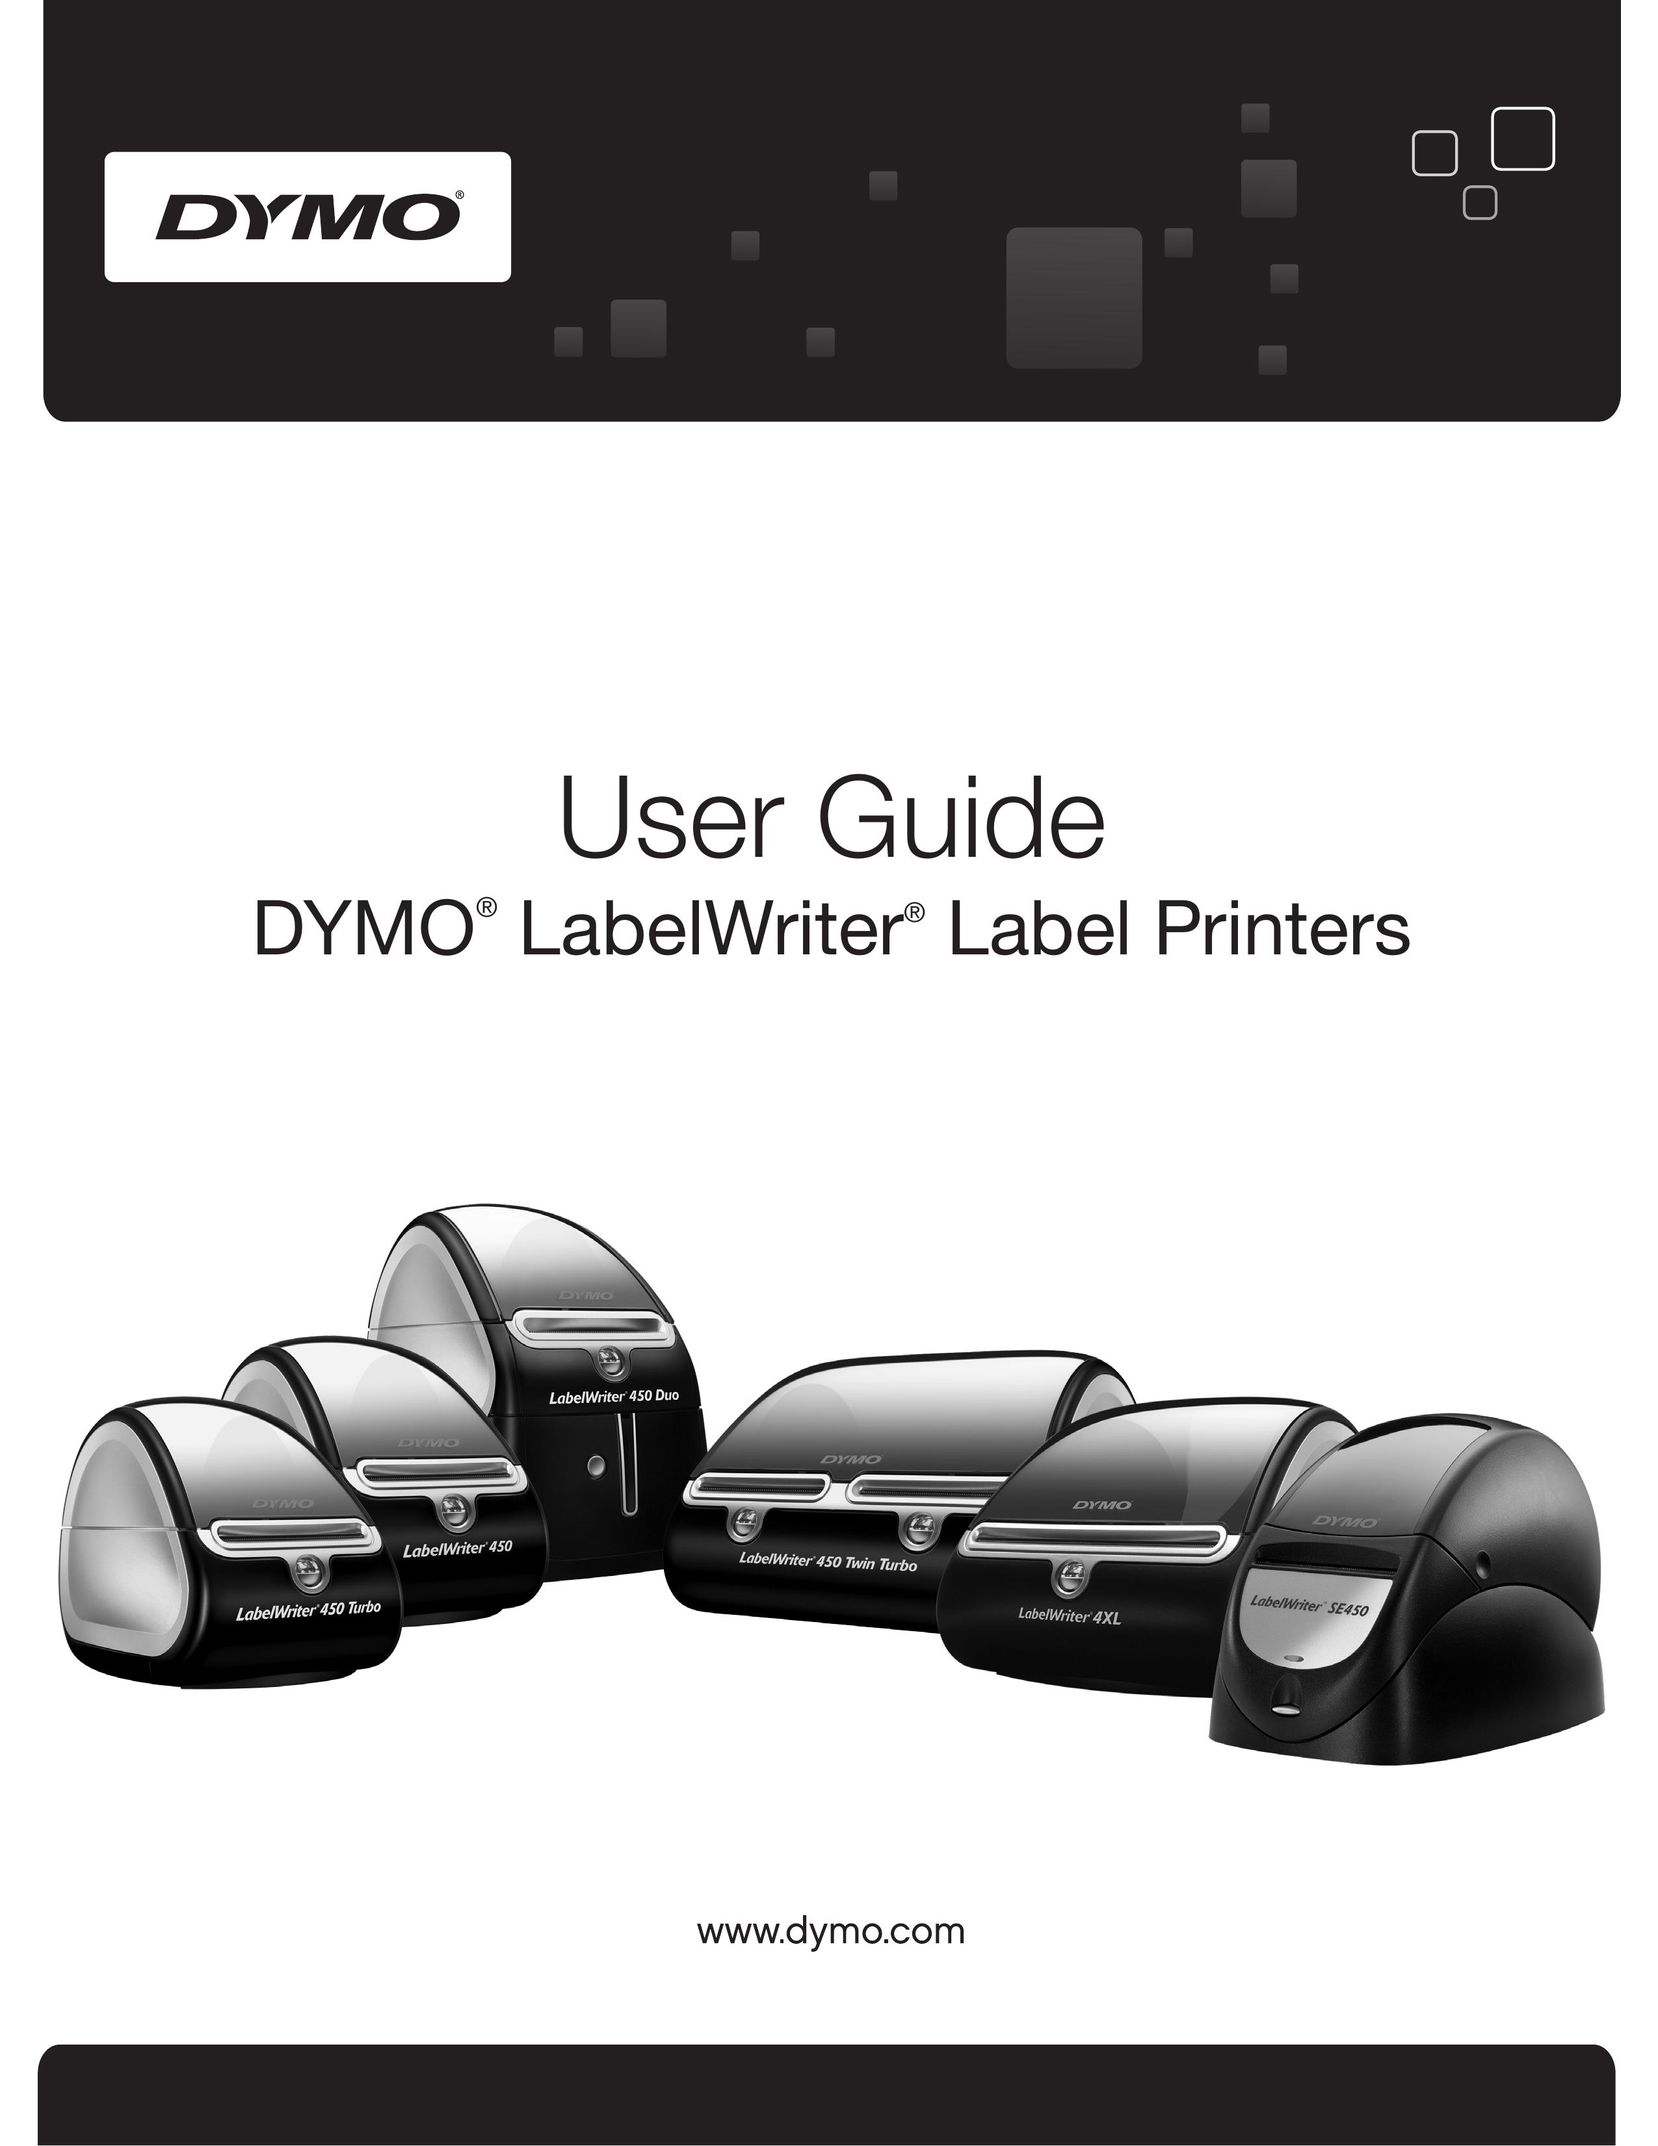 Dymo 450 Duo Label Maker User Manual